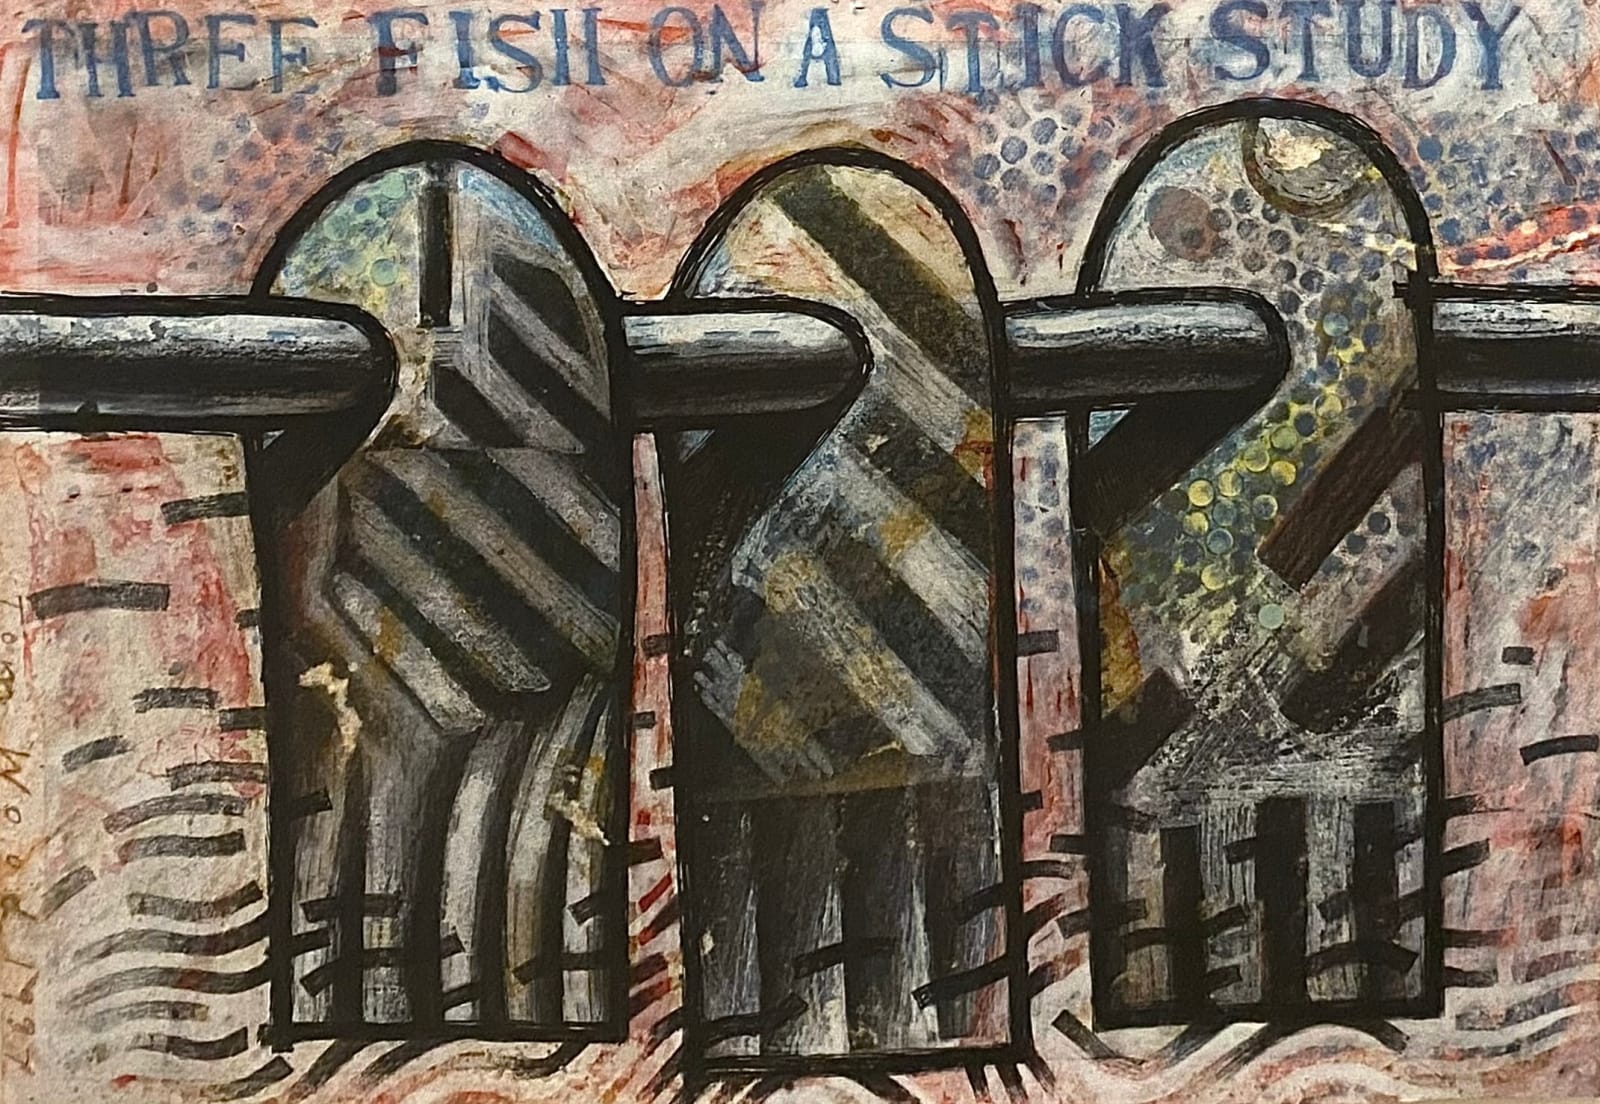 Tom Wood, Three Fish on a Stick Study, 1987